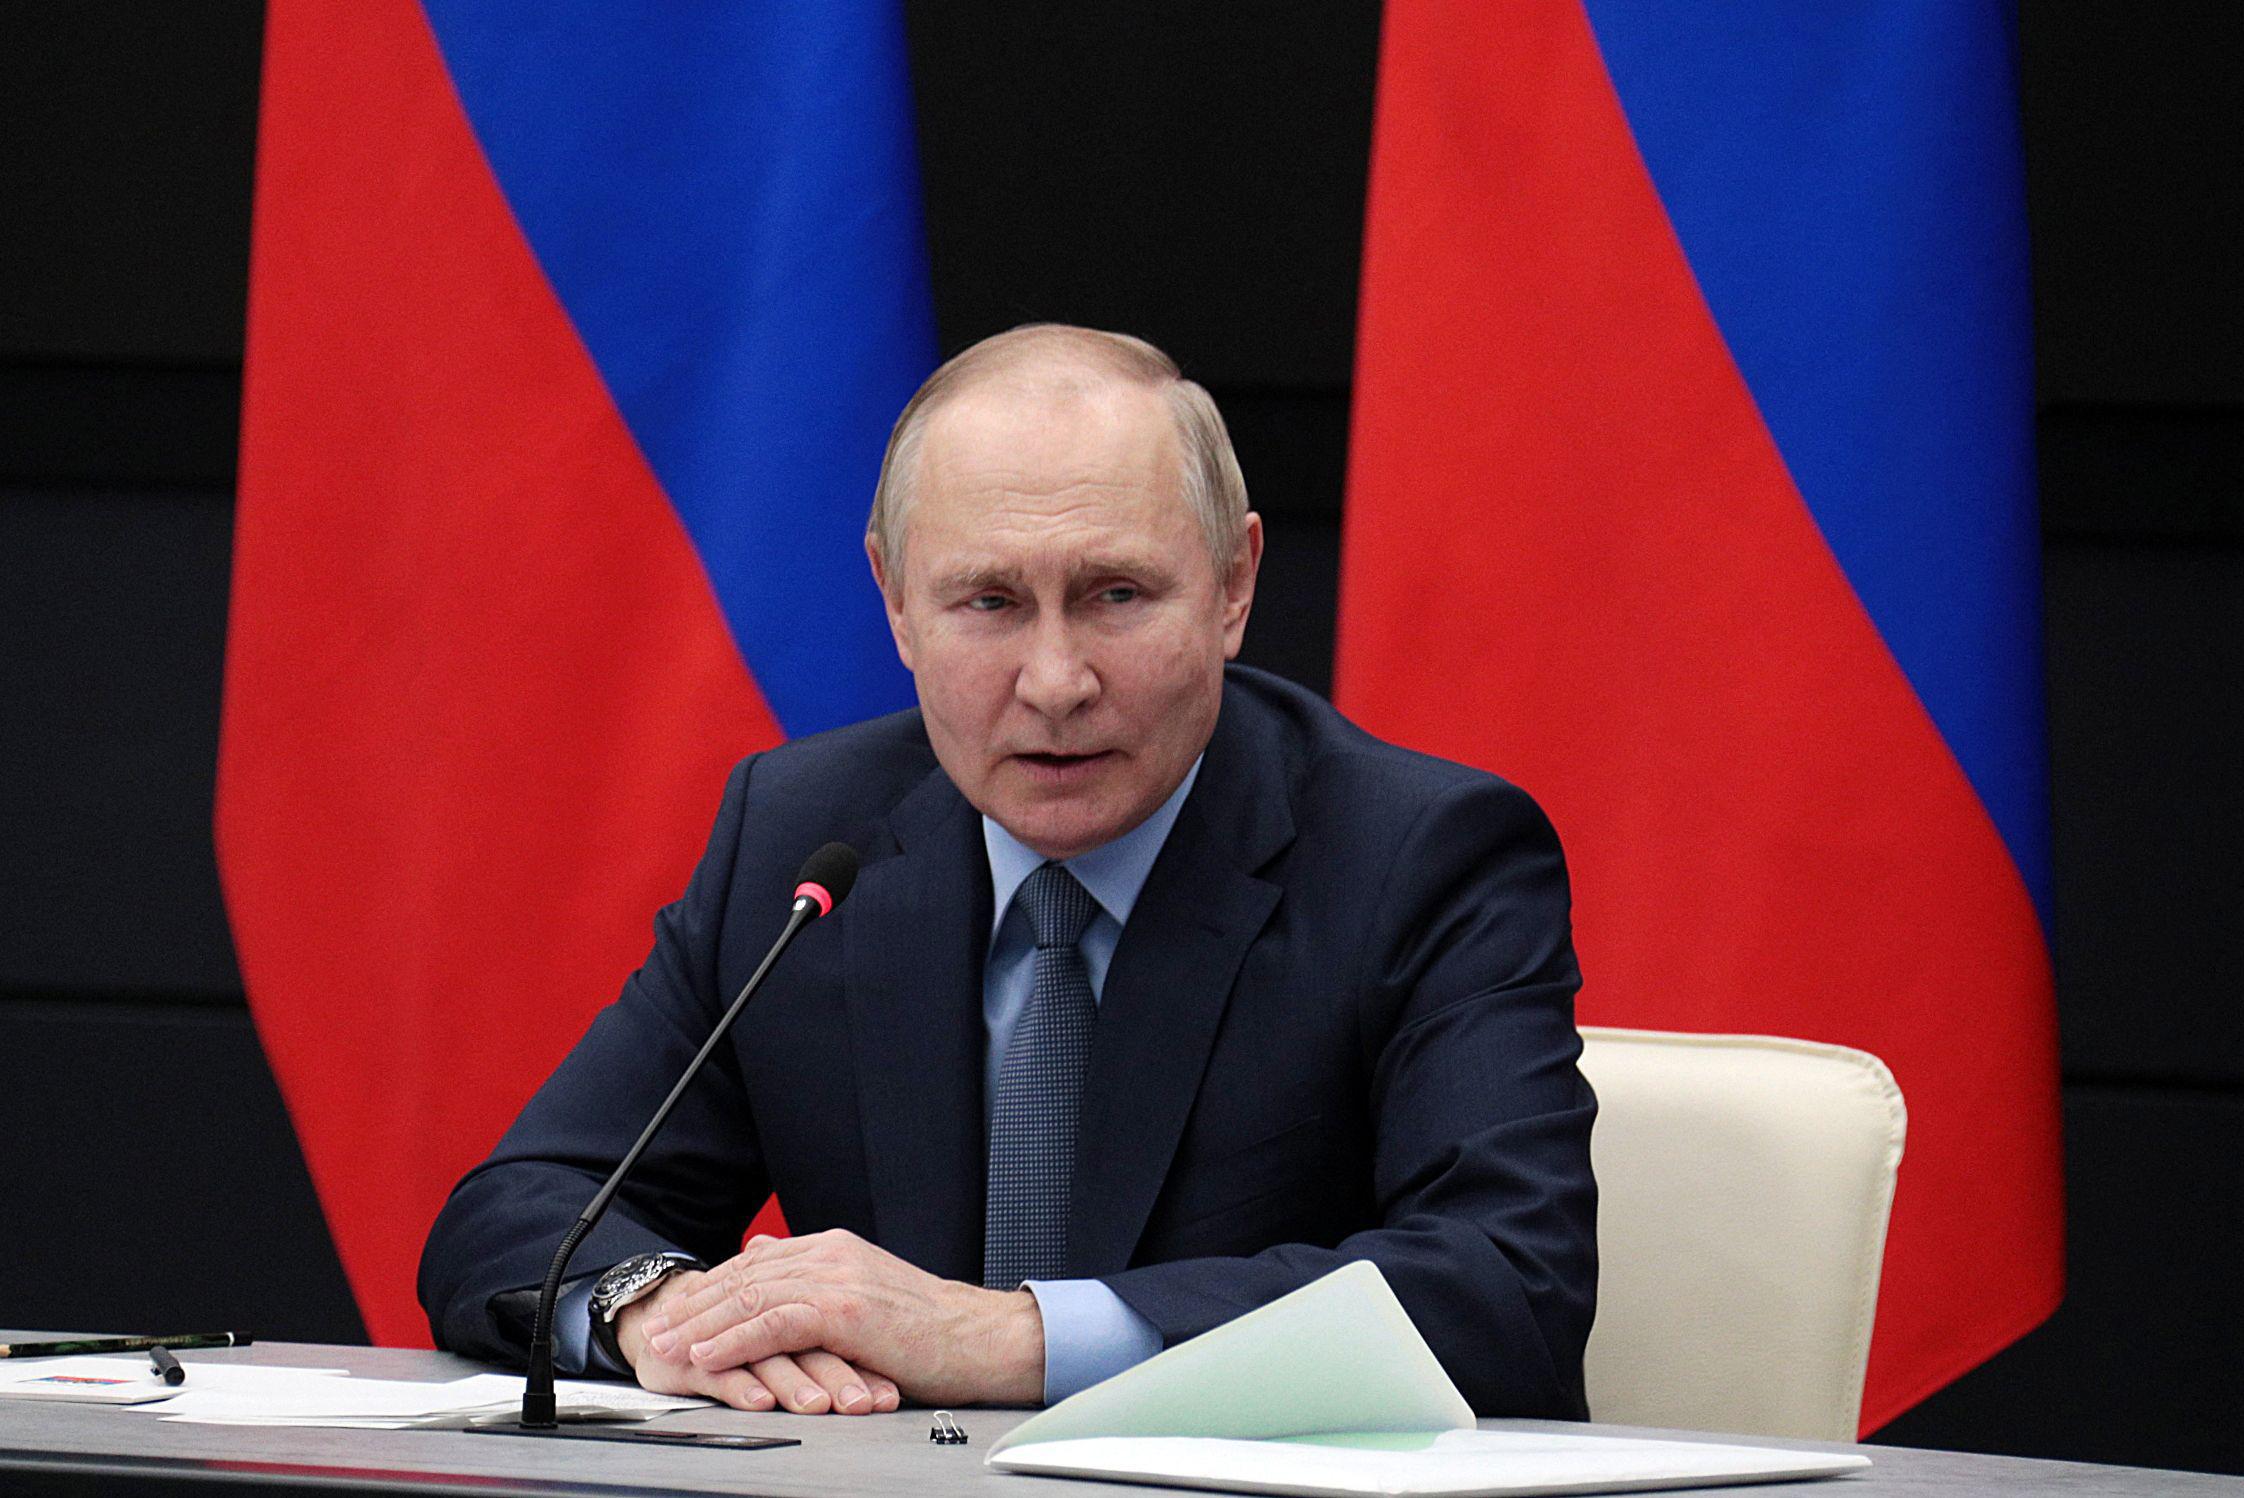 Putin pronuncia per la prima volta la parola proibita, gli Stati Uniti replicano: “L’aggressione russa ha causato distruzione, qualunque termine usi”